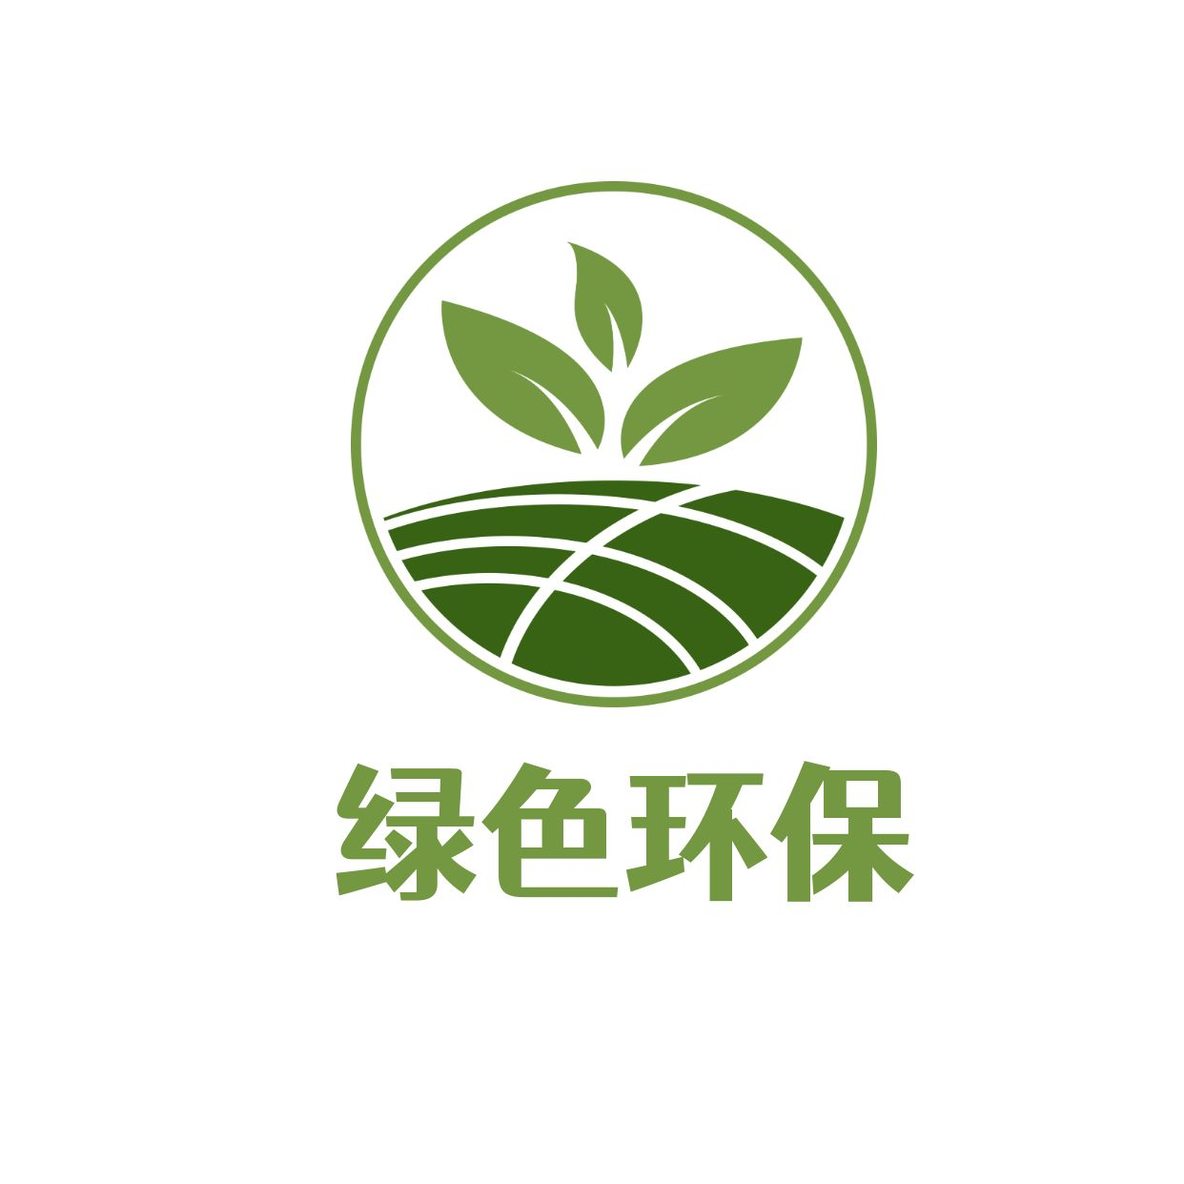 公益环保自然护logo8